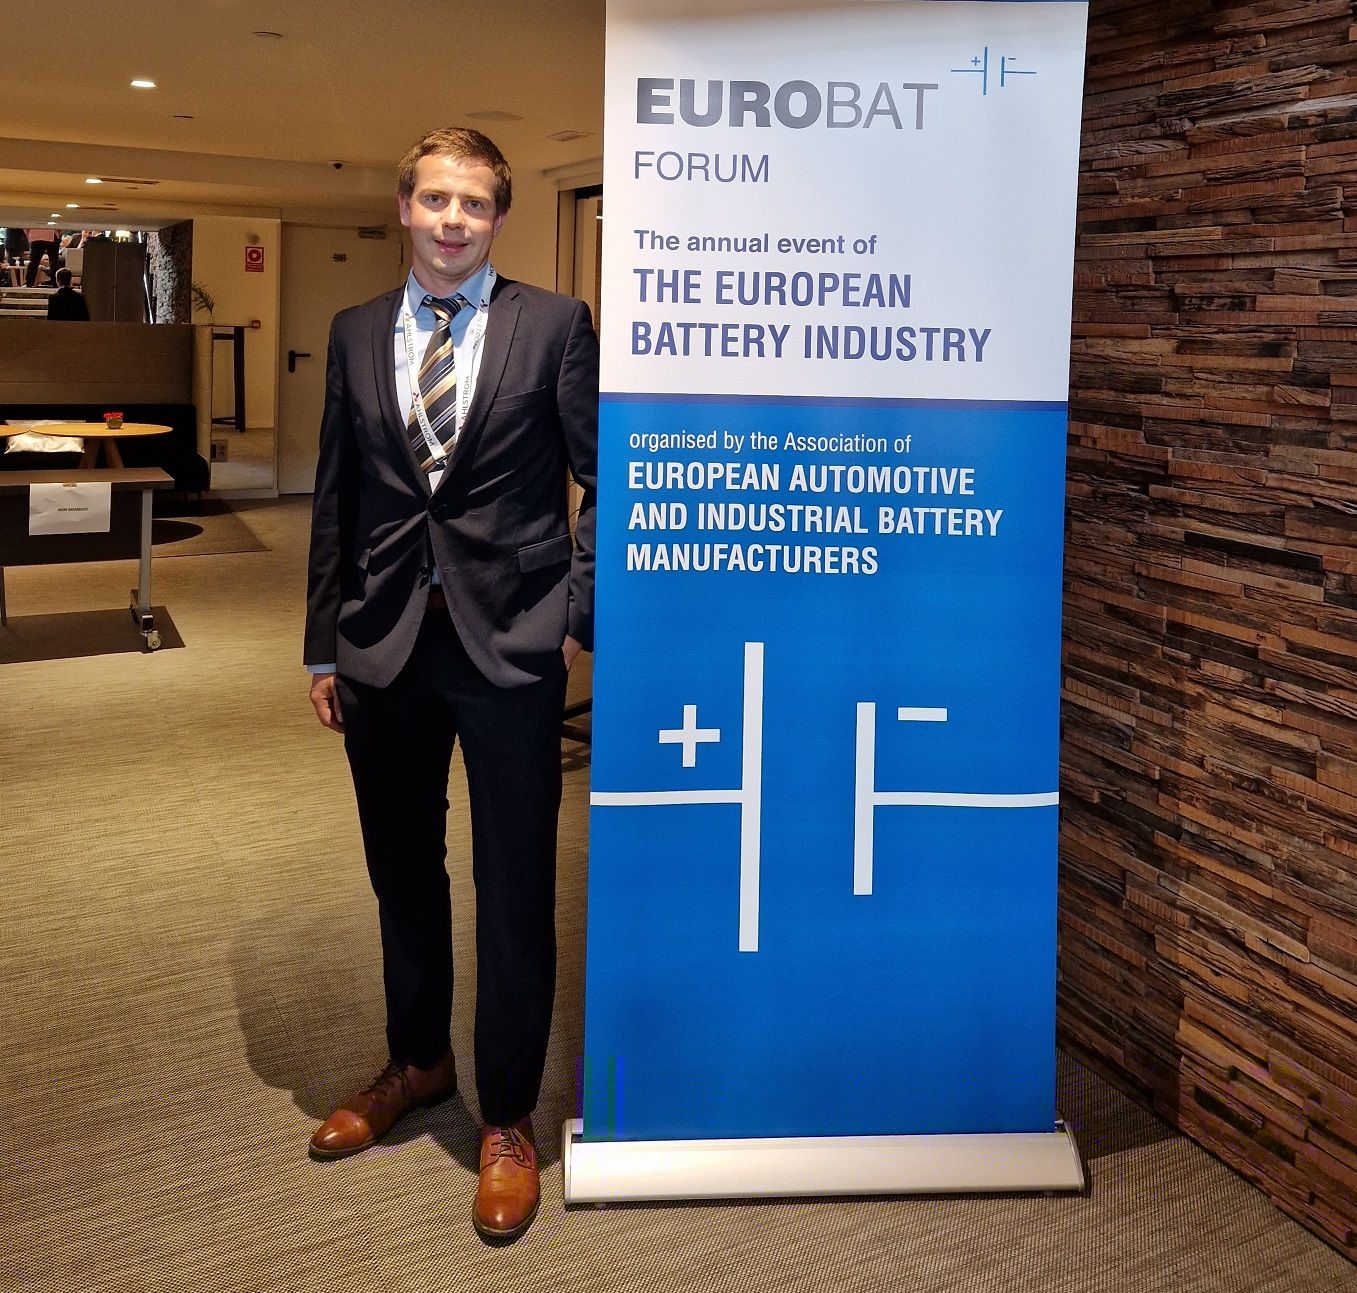 EUROBAT Forum in Madrid